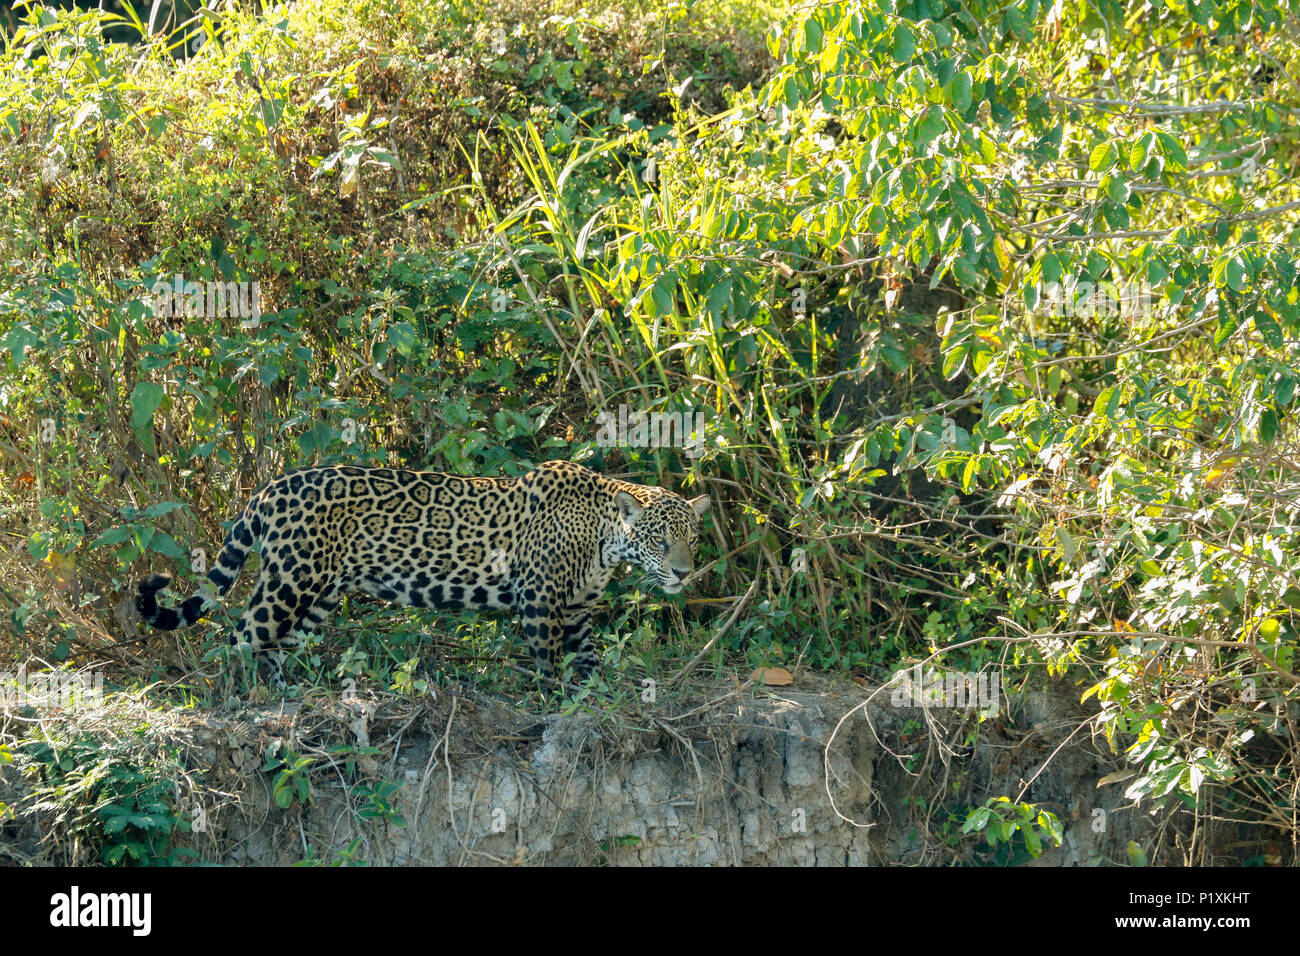 Région du Pantanal, Mato Grosso, Brésil, Amérique du Sud. Jaguar à chercher de la nourriture, l'air très ressemblant à la recherche de caïmans sur la rive. Banque D'Images